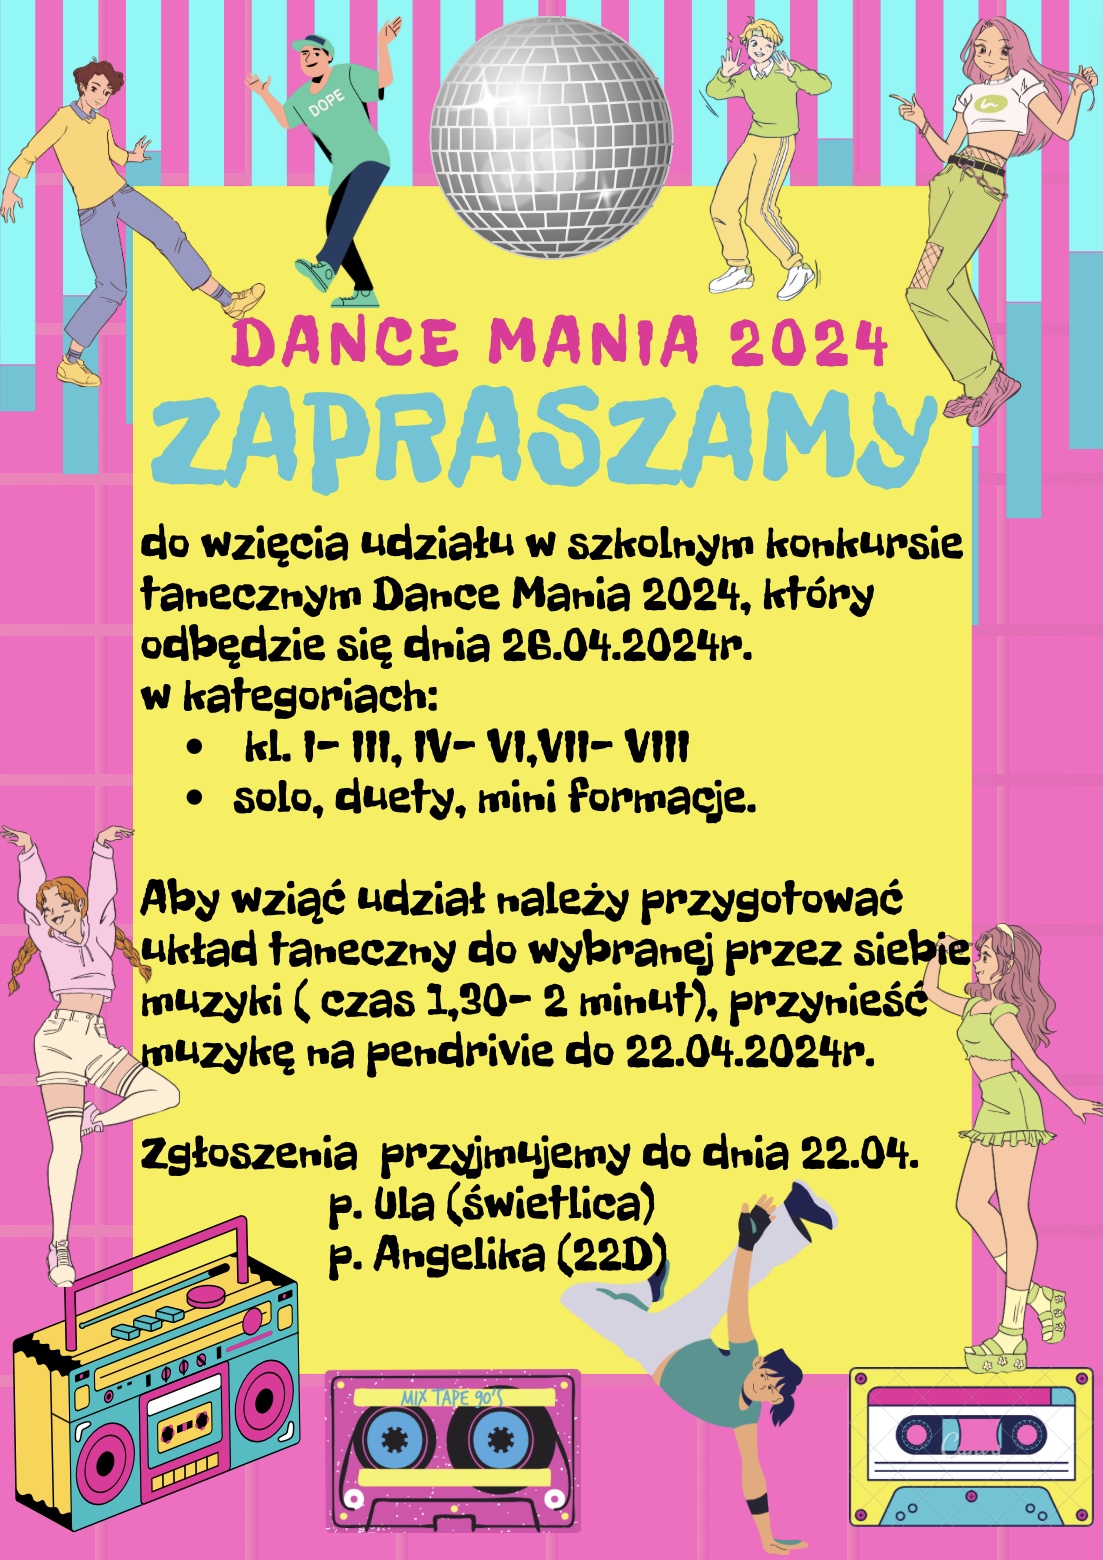 Dance Mania 2024 - szkolny konkurs taneczny